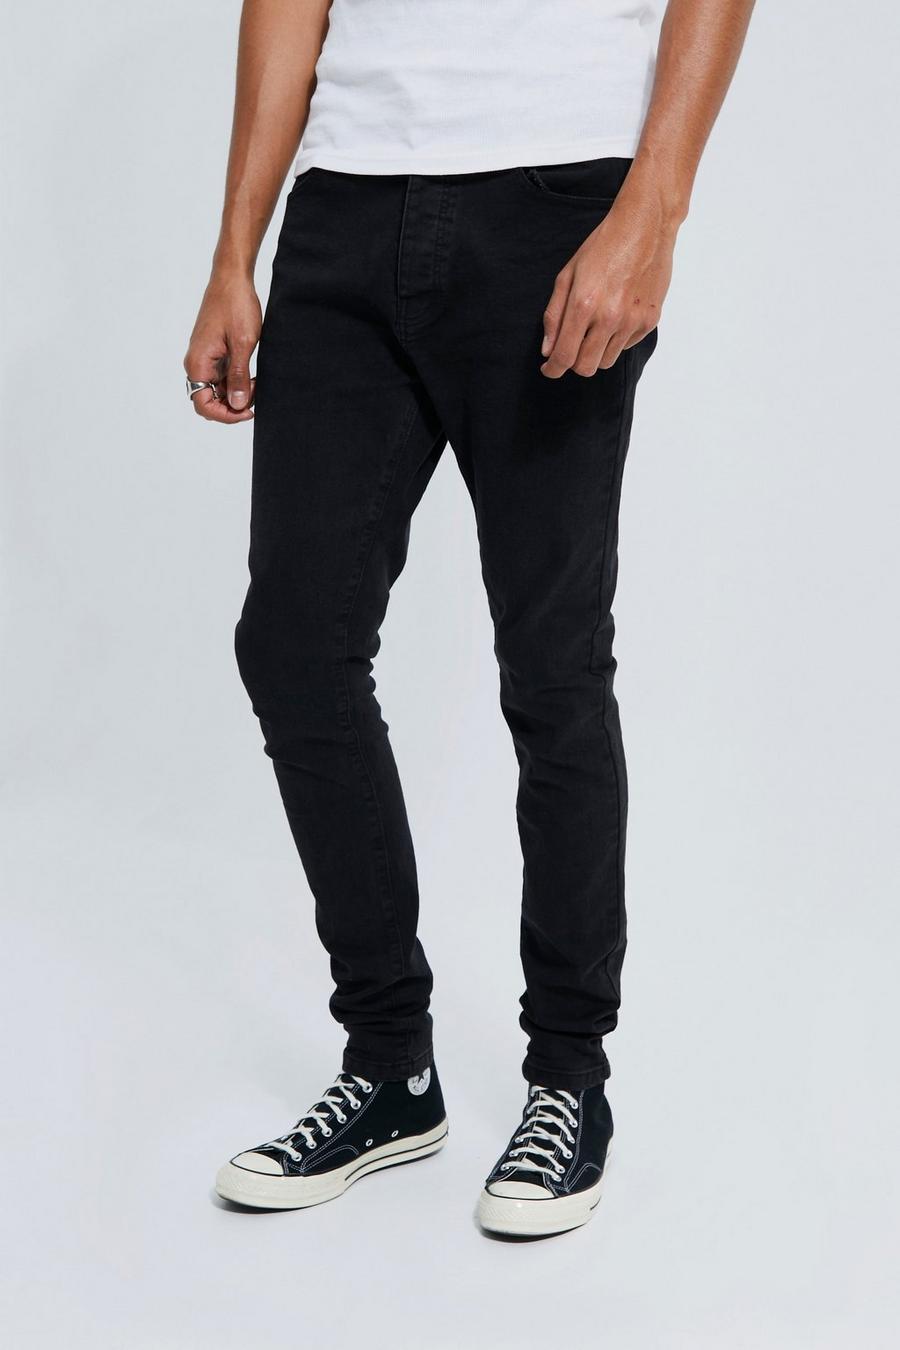 שחור דהוי ג'ינס סקיני נמתח לגברים גבוהים